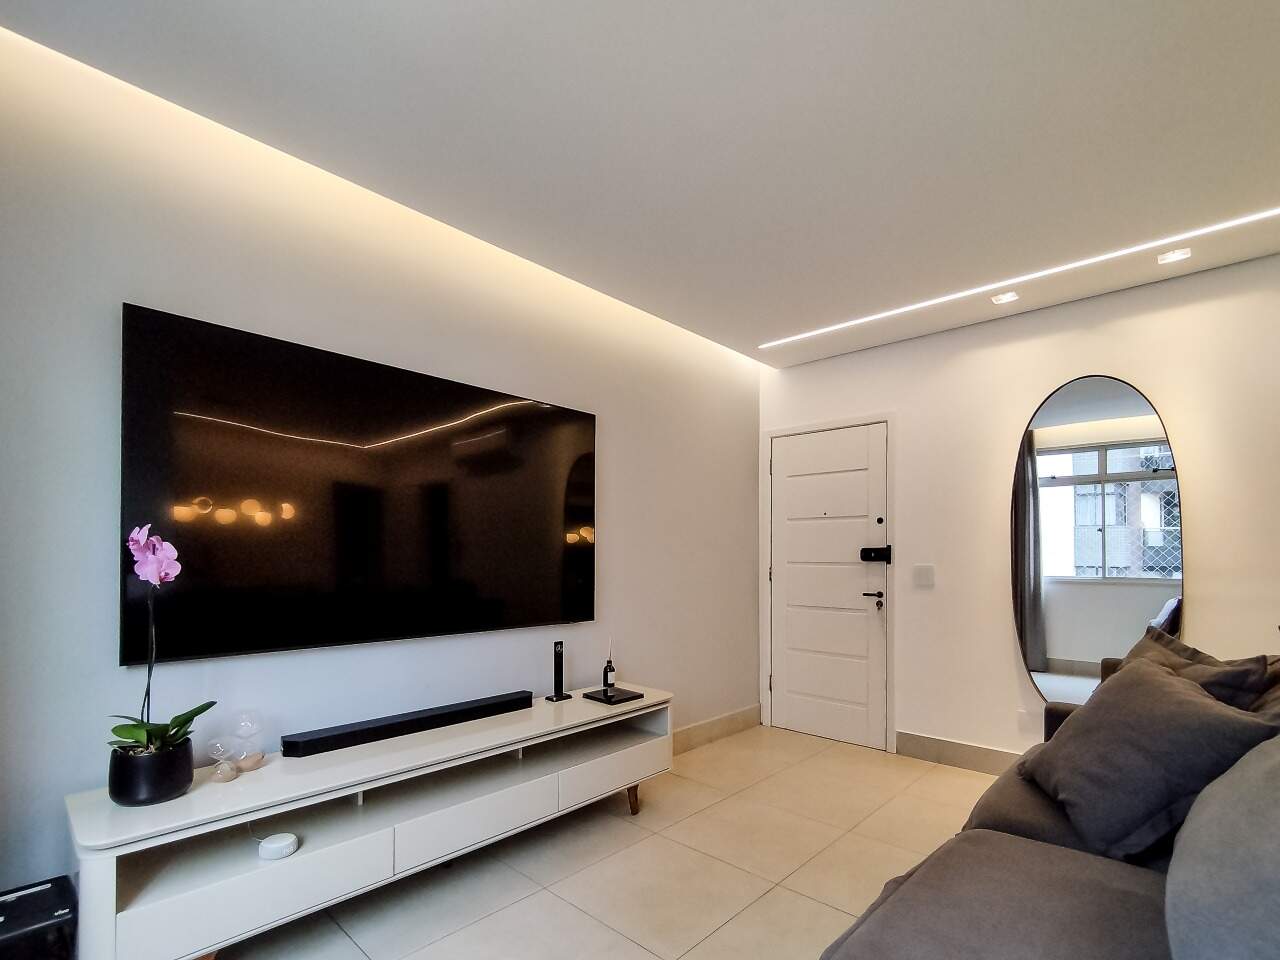 Imagem do imóvel Apartamento à venda, 3 quartos, 1 suíte, 2 vagas, Buritis - Belo Horizonte/MG